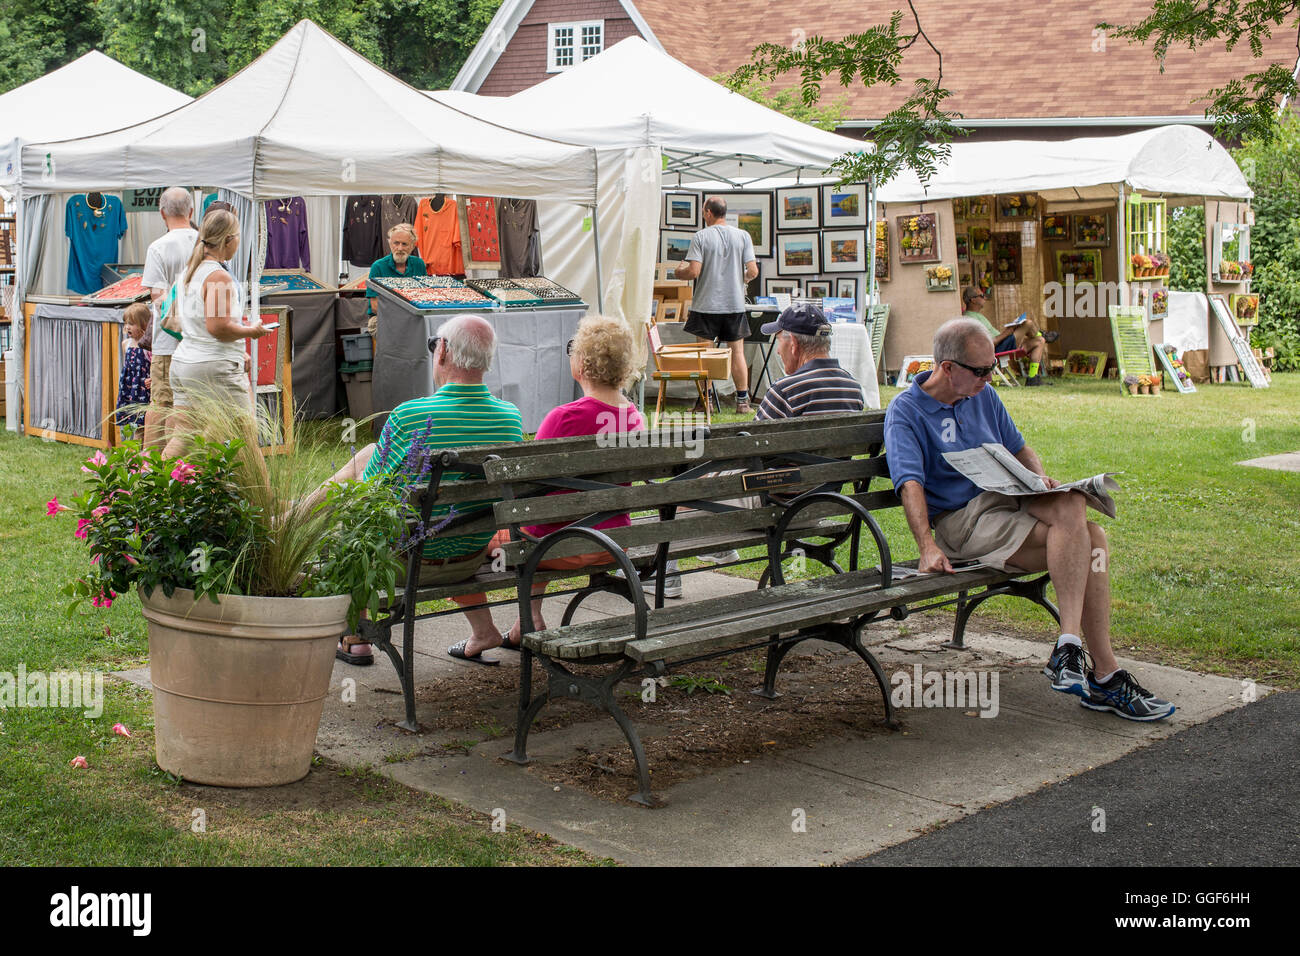 La gente sentada en un banco en una muestra de arte y artesanía en Lenox, MA Foto de stock